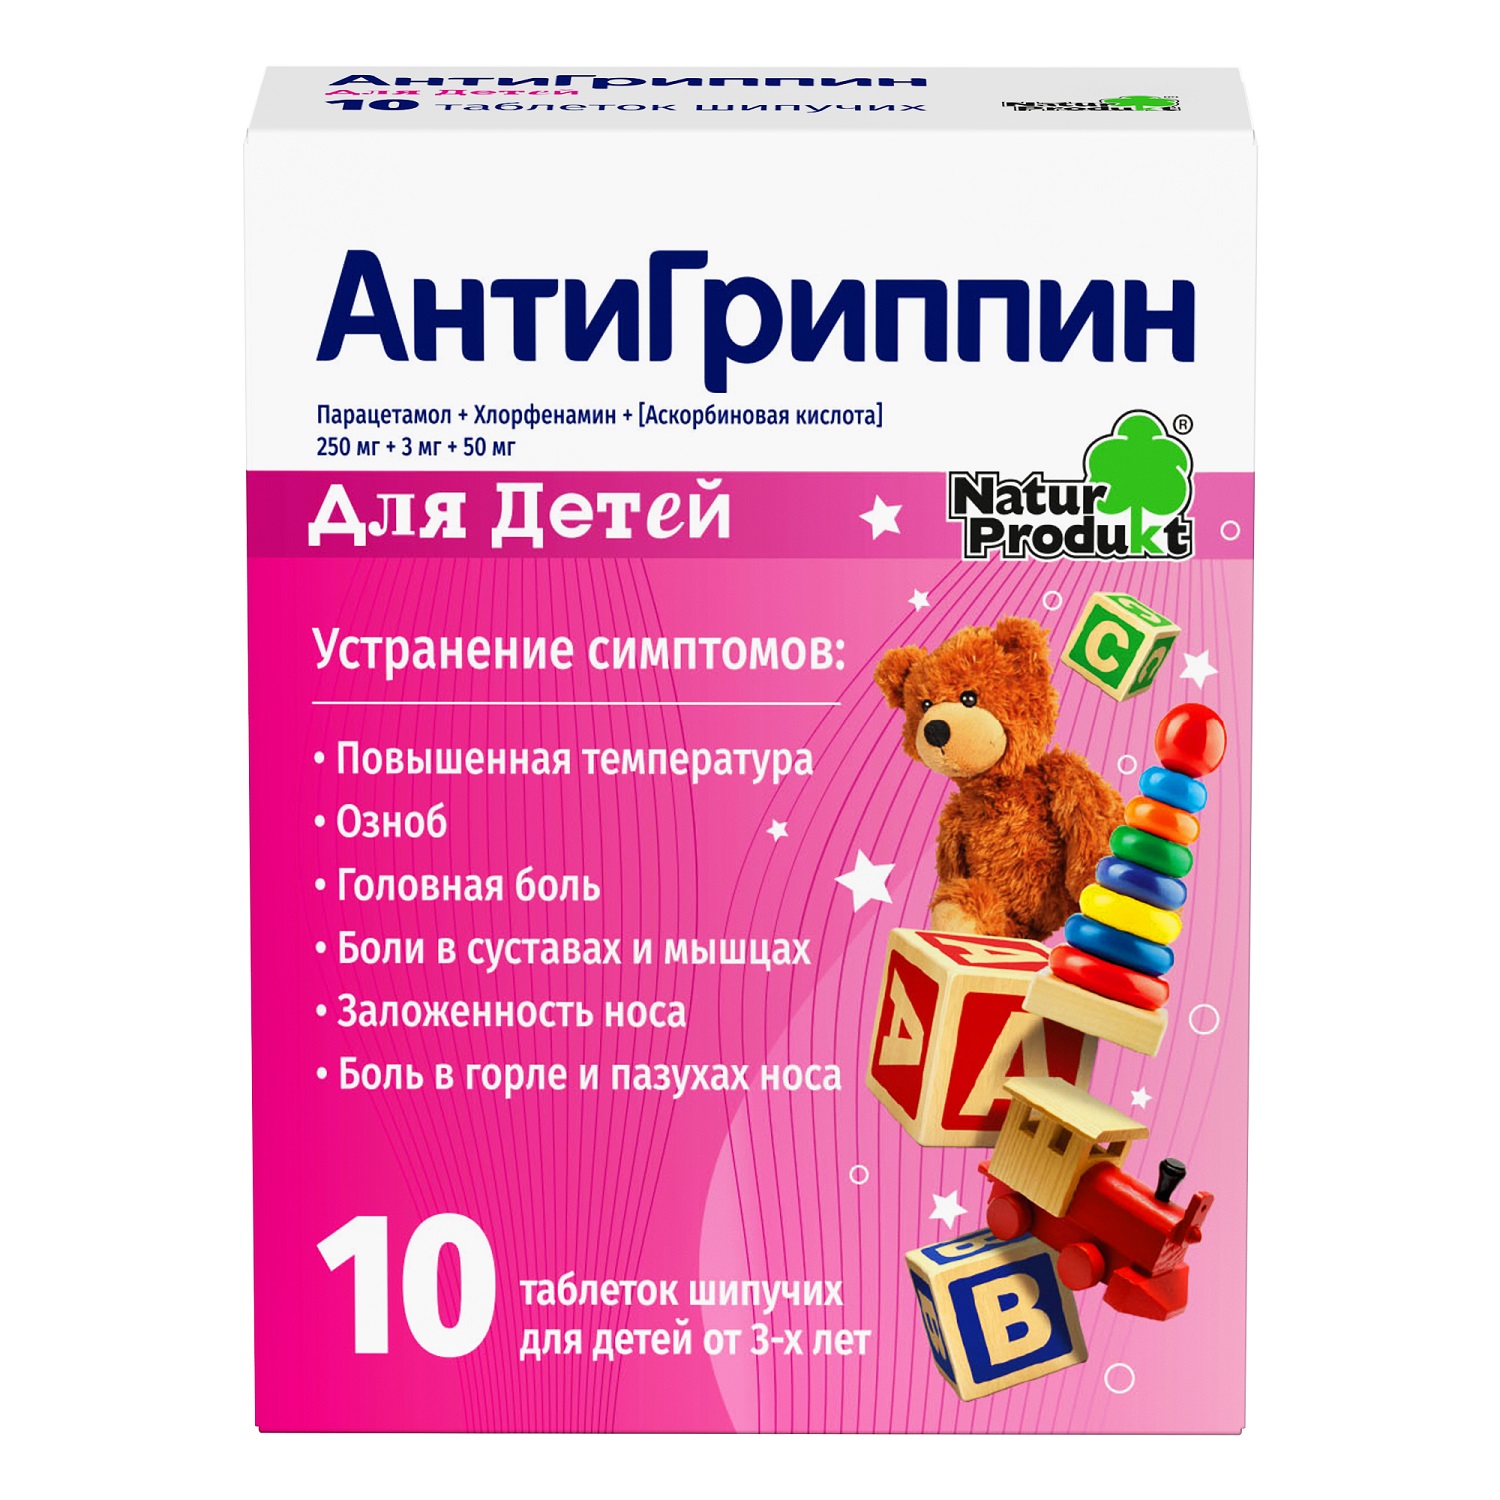 Купить Антигриппин детский таб.шип. №10, Natur Produkt